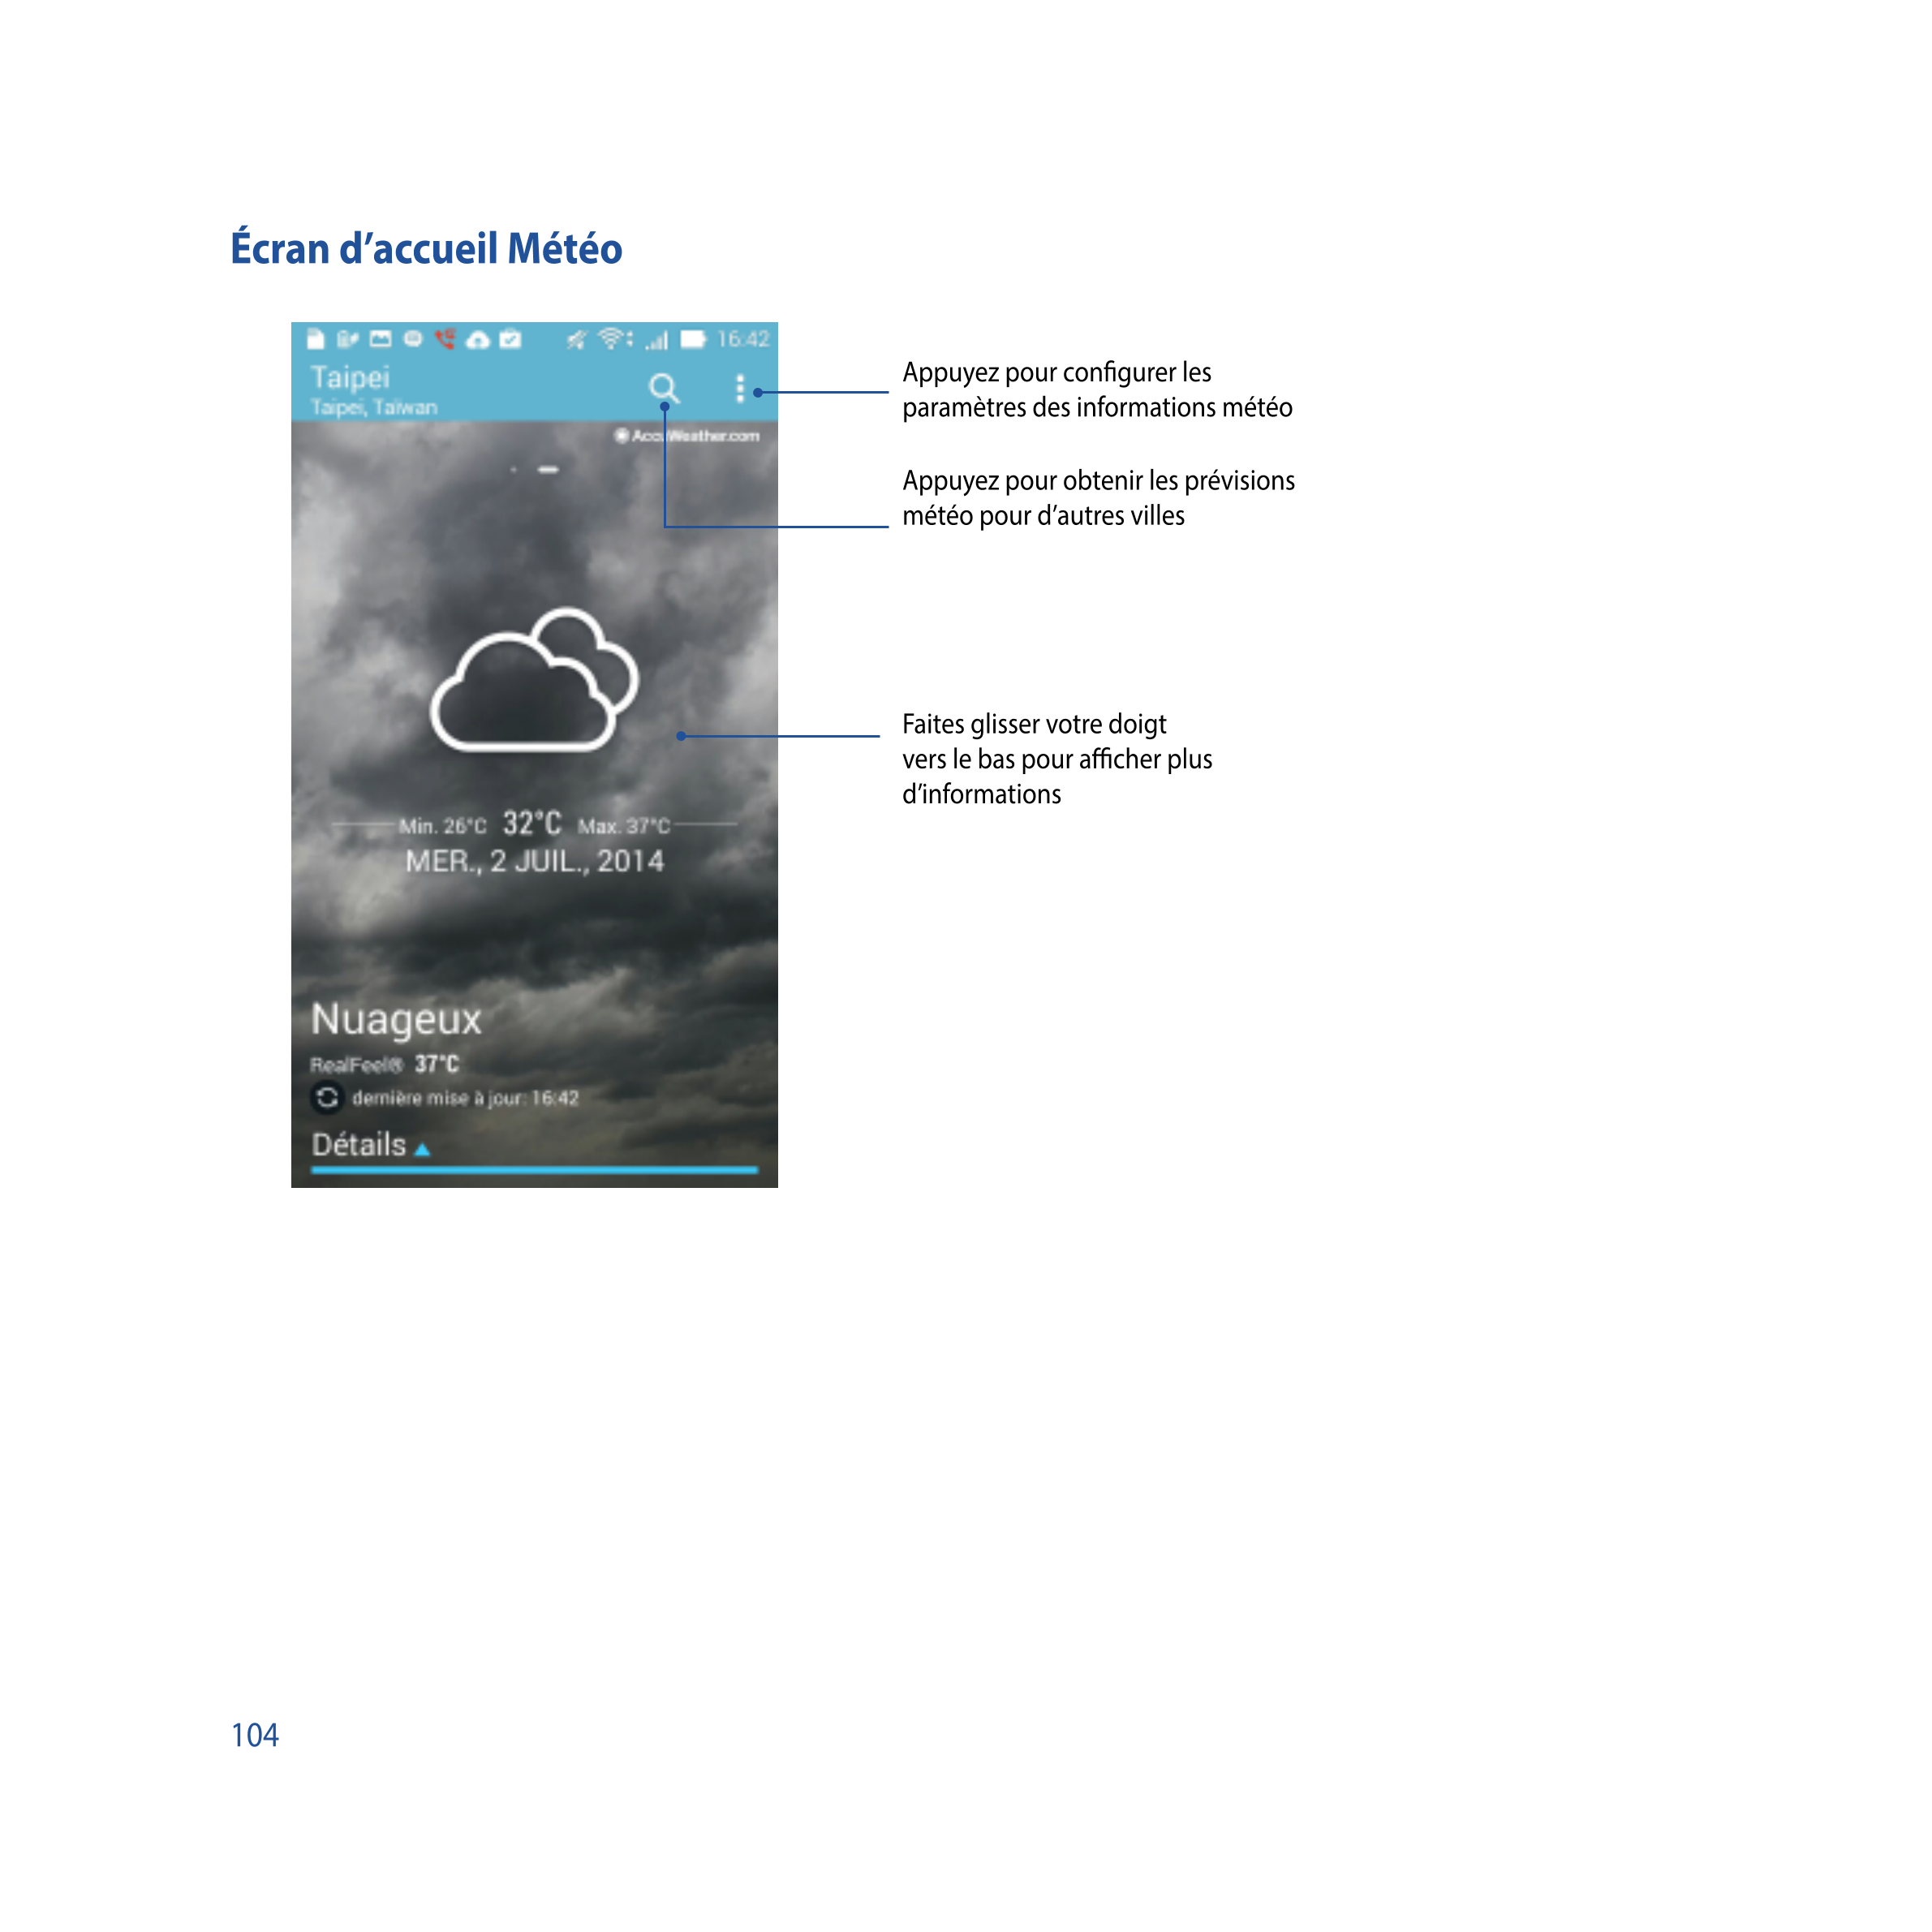 Écran d’accueil Météo
Appuyez pour conﬁgurer les 
paramètres des informations météo
Appuyez pour obtenir les prévisions 
météo p